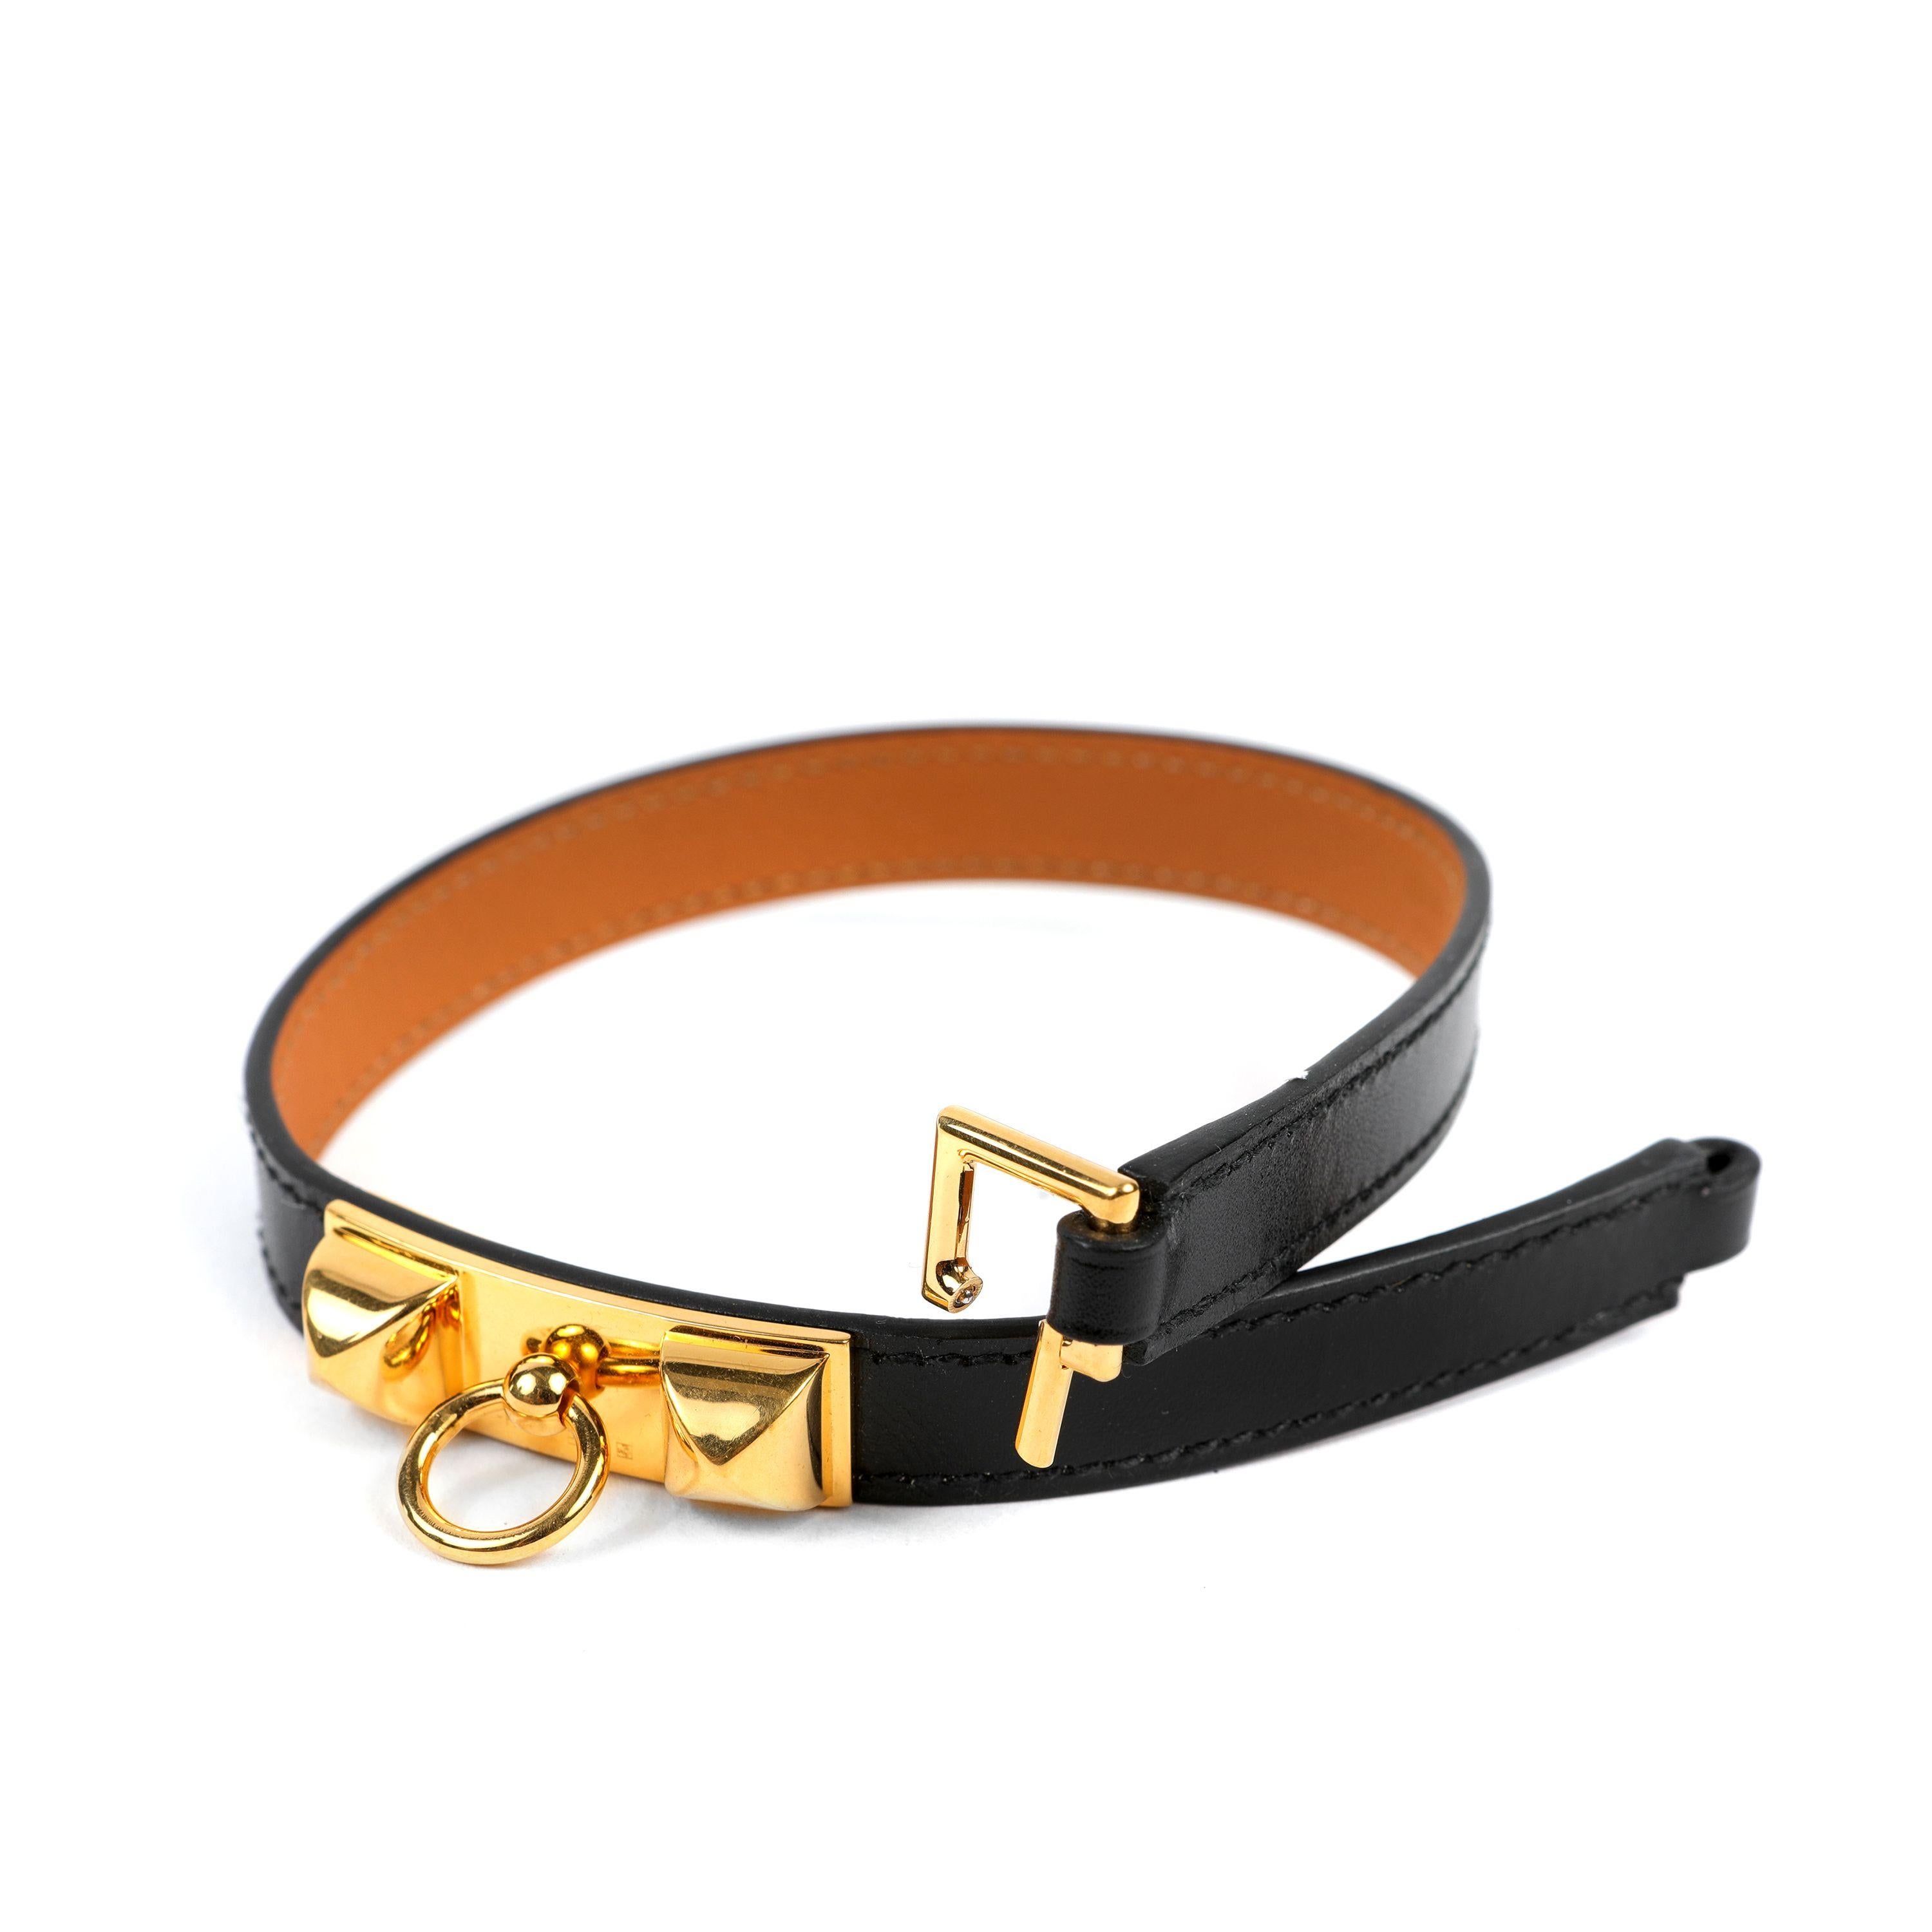 Ce bracelet authentique Hermès Black Rivale Double Tour est en excellent état.  Le cuir noir est enroulé deux fois autour du poignet et fixé par un fermoir à vis de tonalité dorée.

PBF 13642